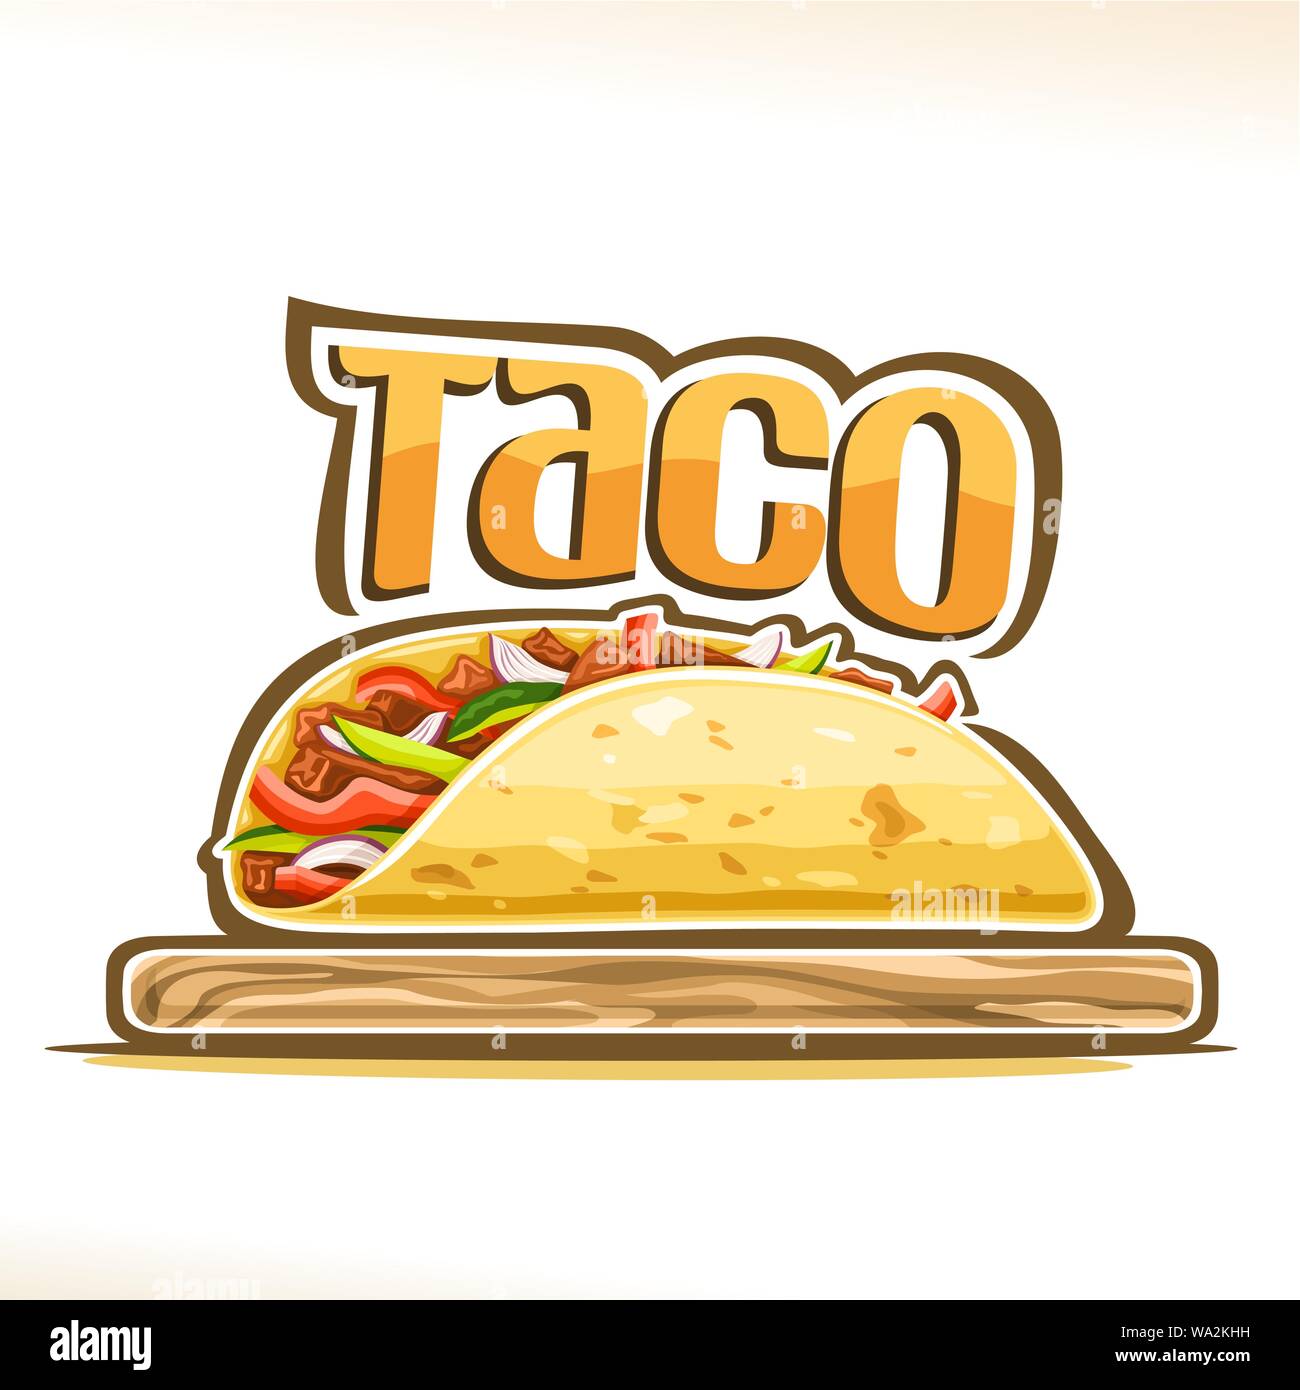 Vektor Plakat für Mexikanischen Taco, Tortilla gefüllte geschreddert Carnitas und frisches Gemüse auf Holzplatte, original Schriftzug für Word Taco, design Logo Stock Vektor